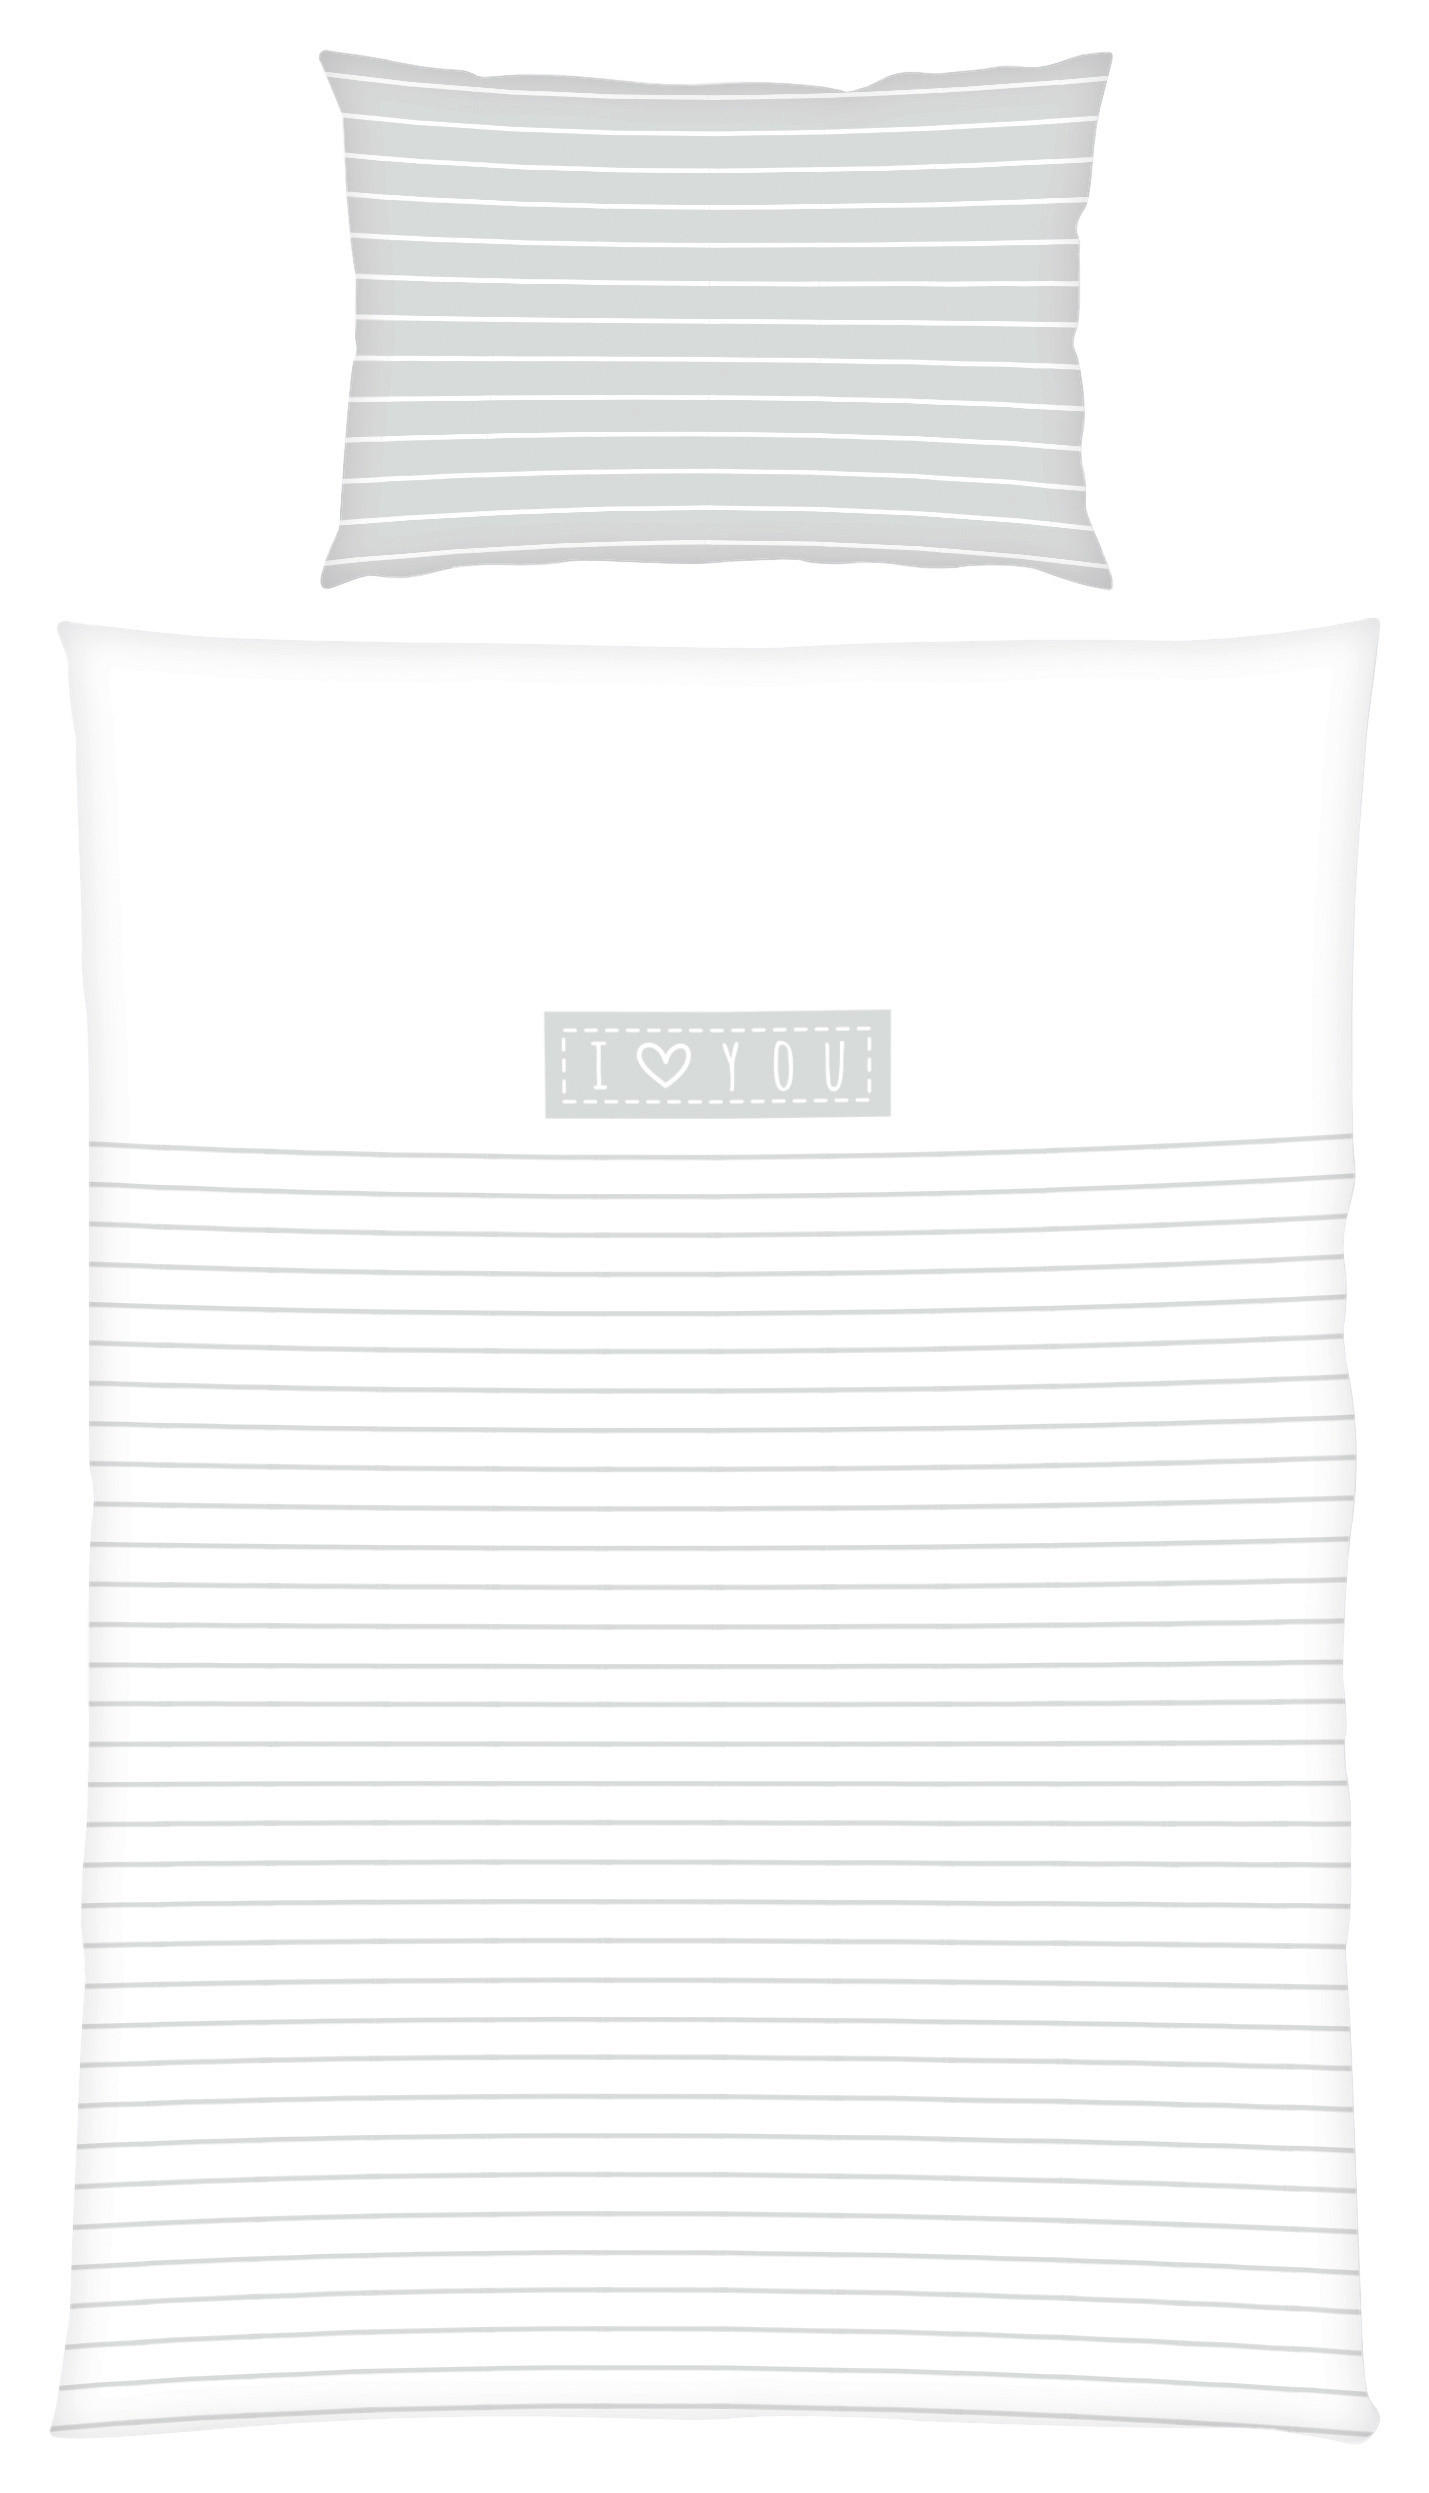 DETSKÁ POSTEĽNÁ BIELIZEŇ - sivá/biela, Konventionell, textil (100/135cm)